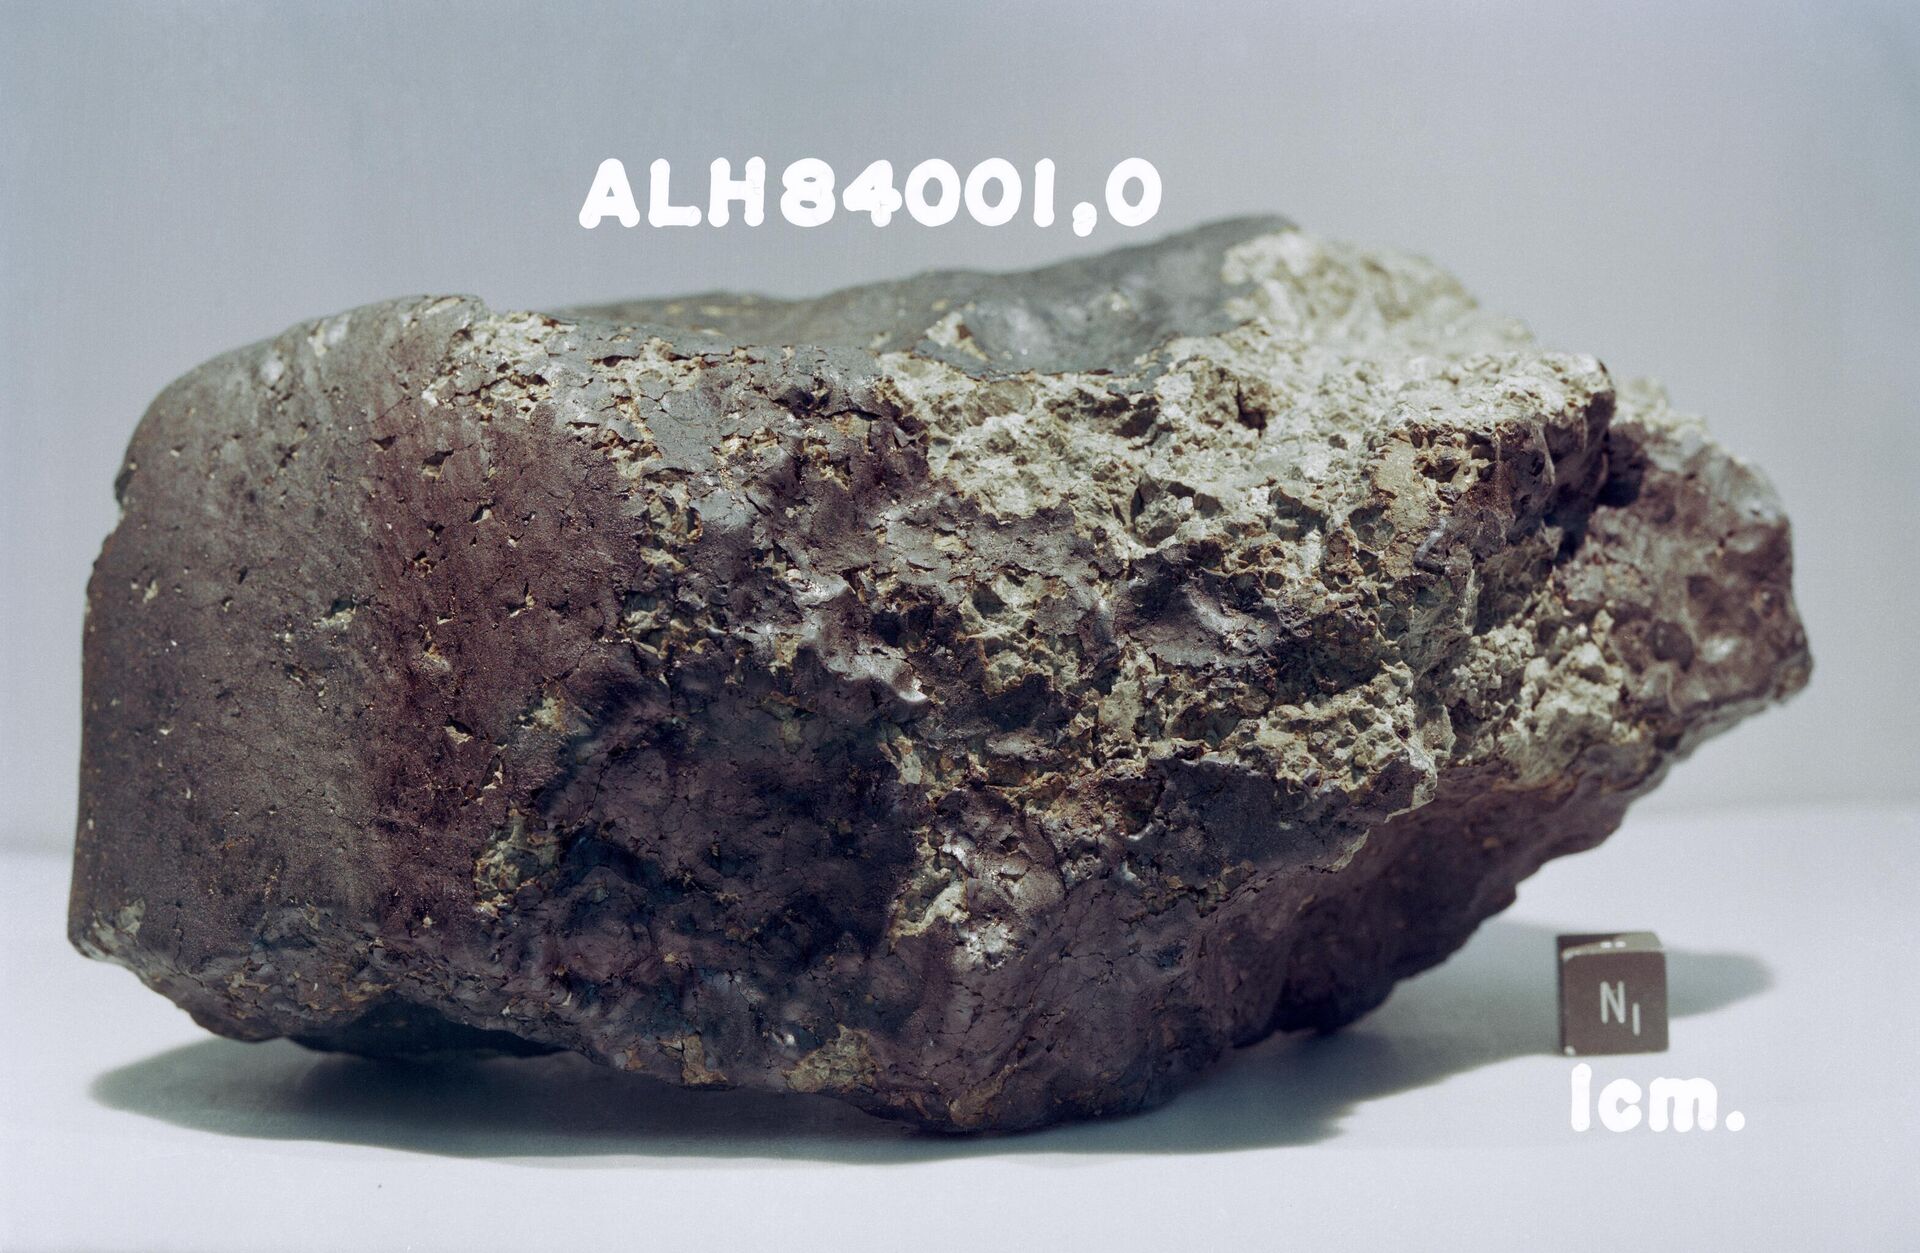 ALH 84001 (Allan Hills 84001) - метеорит, найденный 27 декабря 1984 года в горах Алан Хиллс в Антарктиде - Sputnik 日本, 1920, 16.02.2023